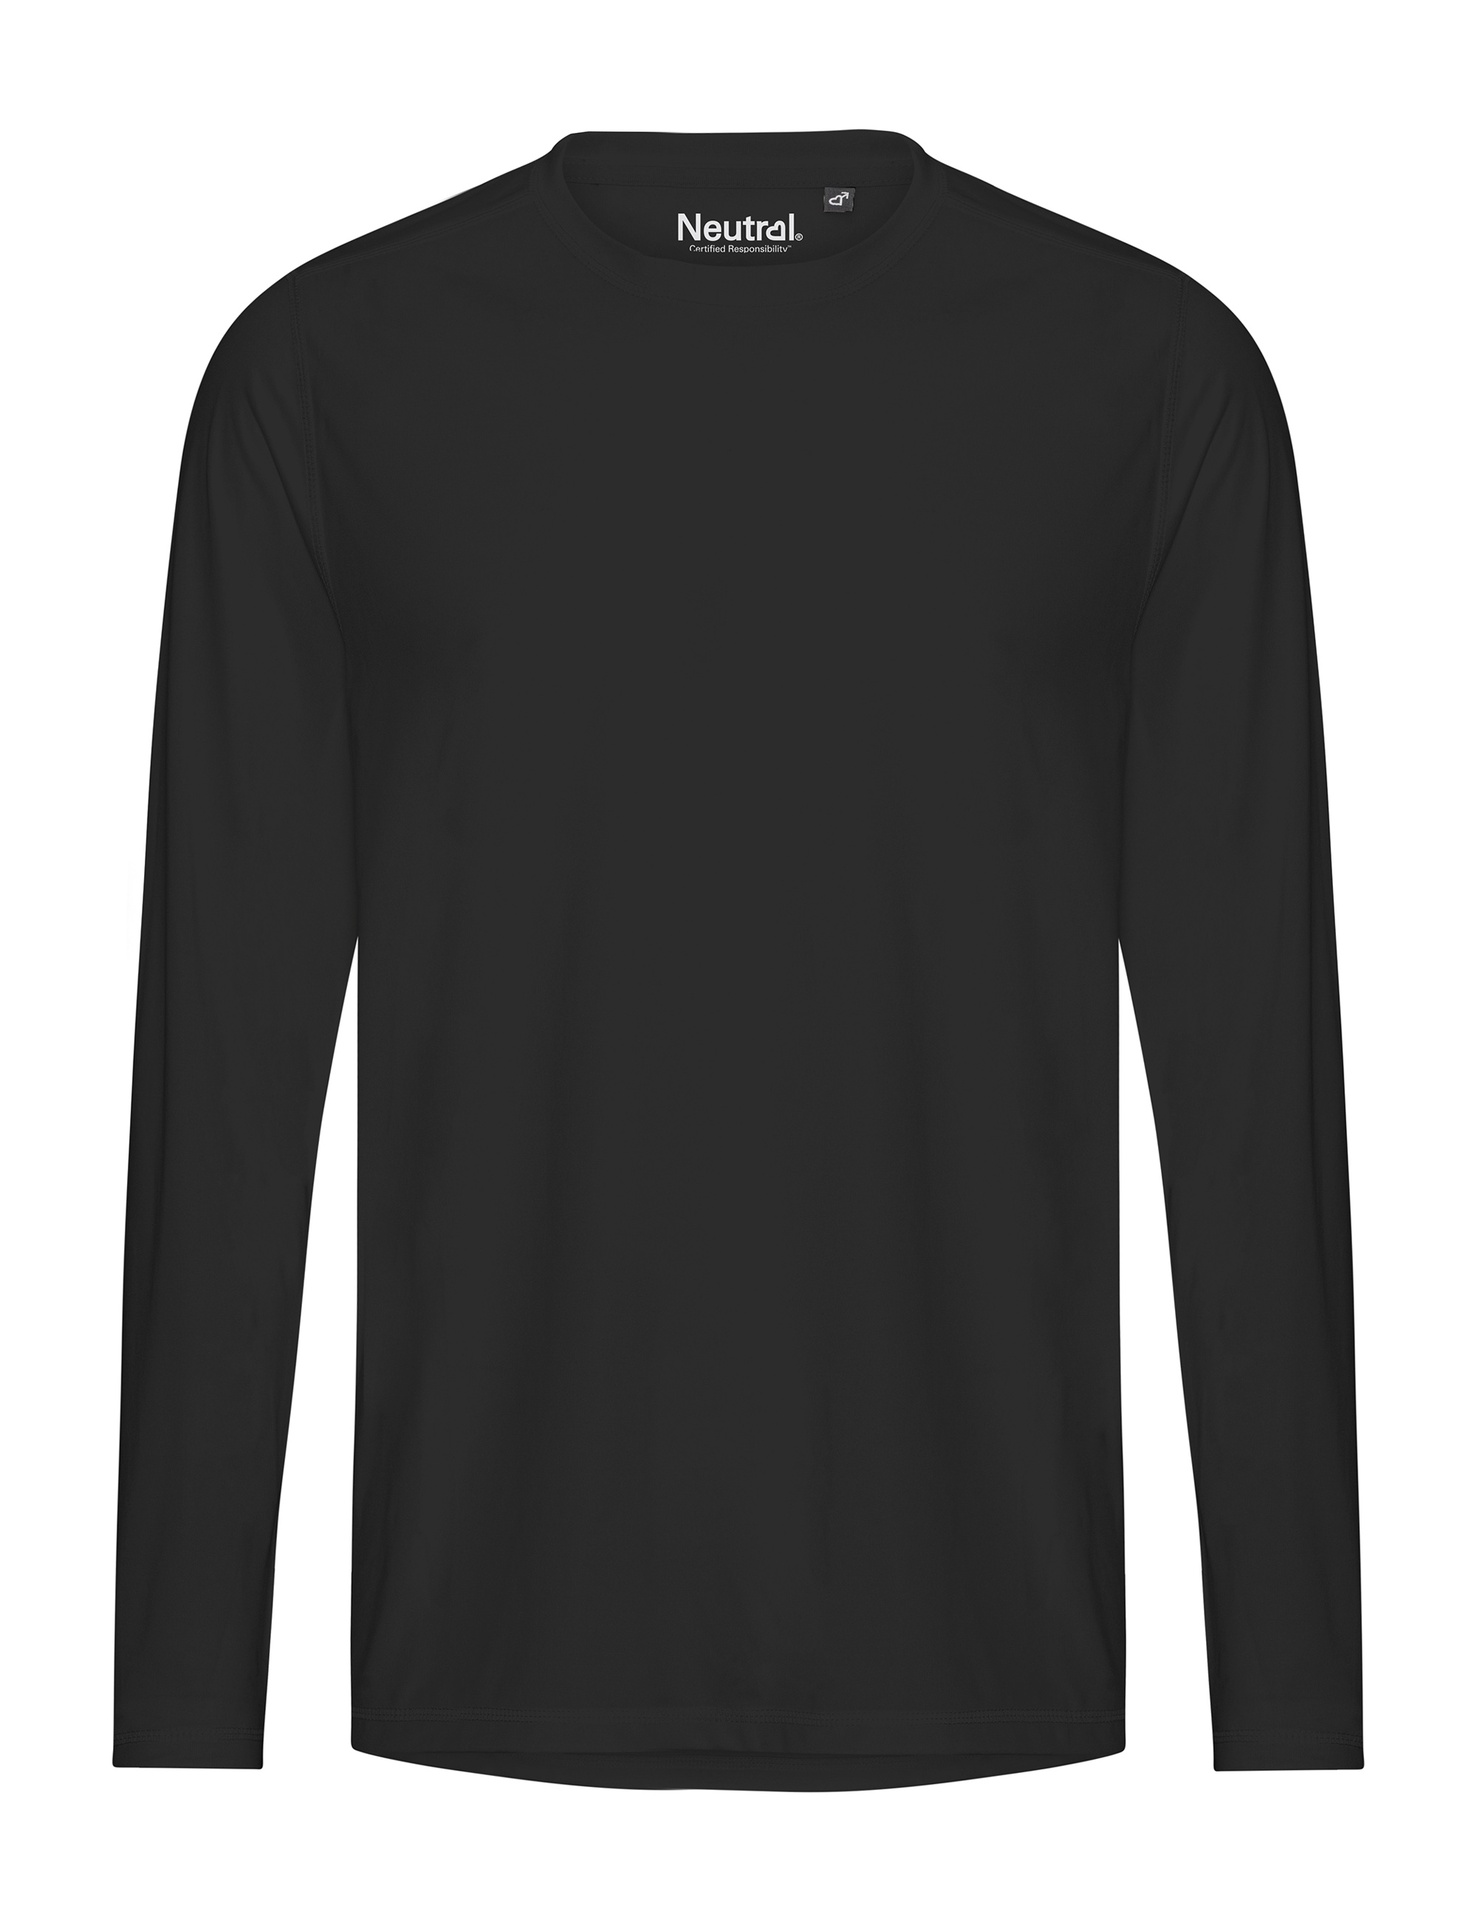 [PR/03831] Recycled Performance LS T-Shirt (Black 03, 3XL)